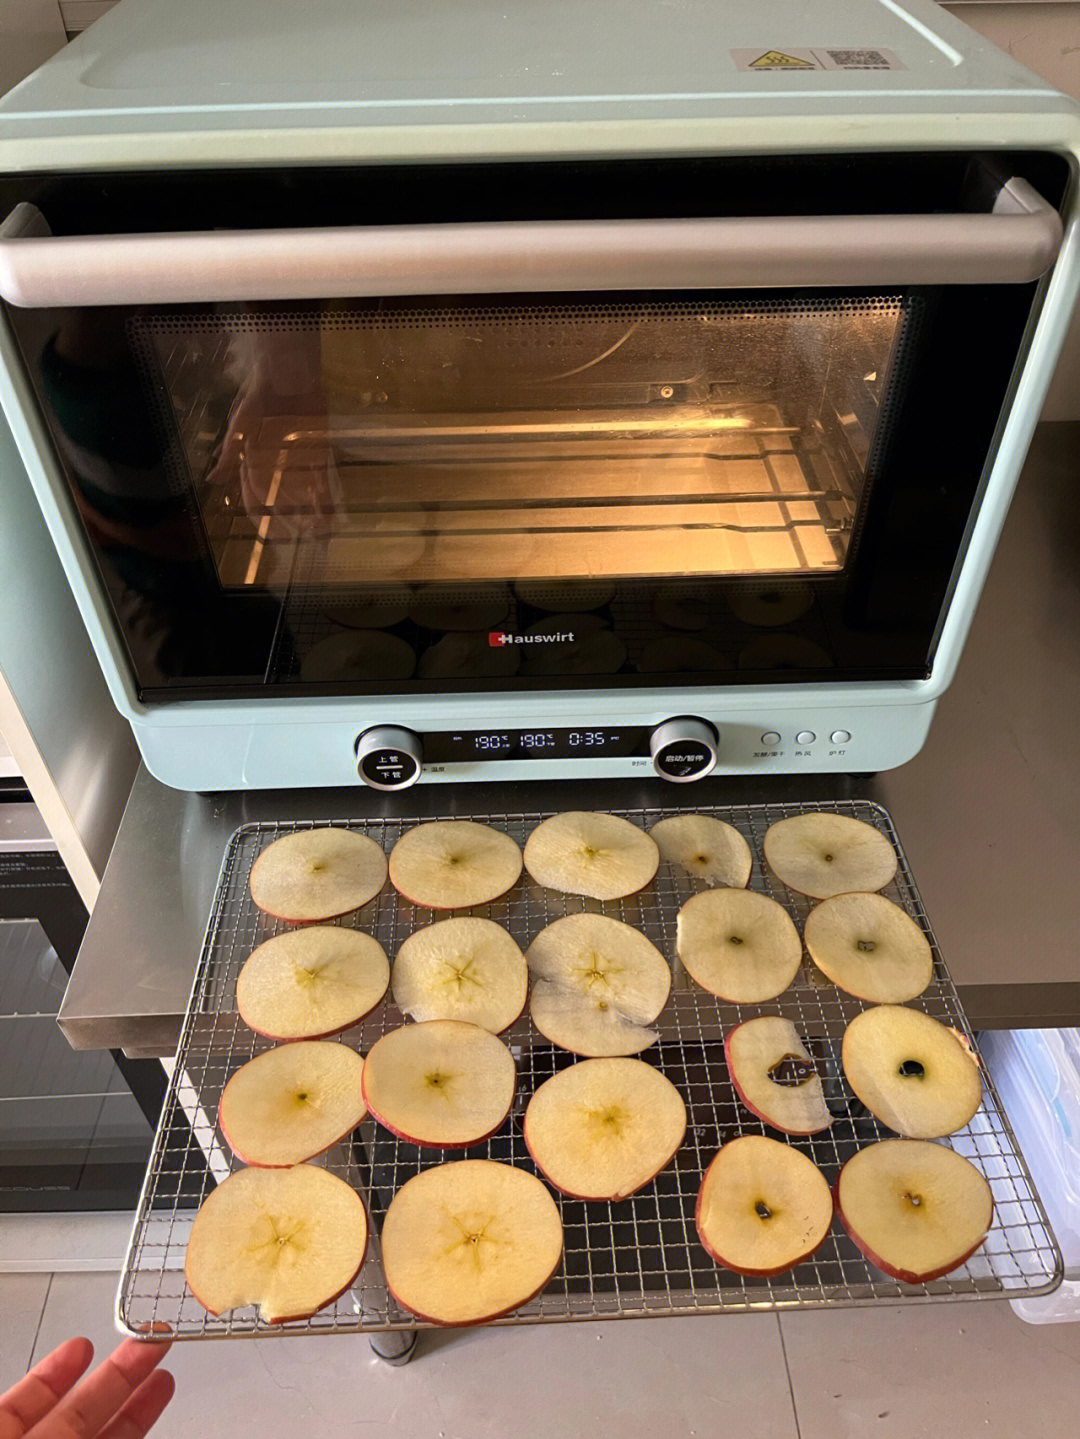 1,苹果切薄片,尽量切薄一点2,平铺在烤网上,不要重叠,190度预热烤箱3